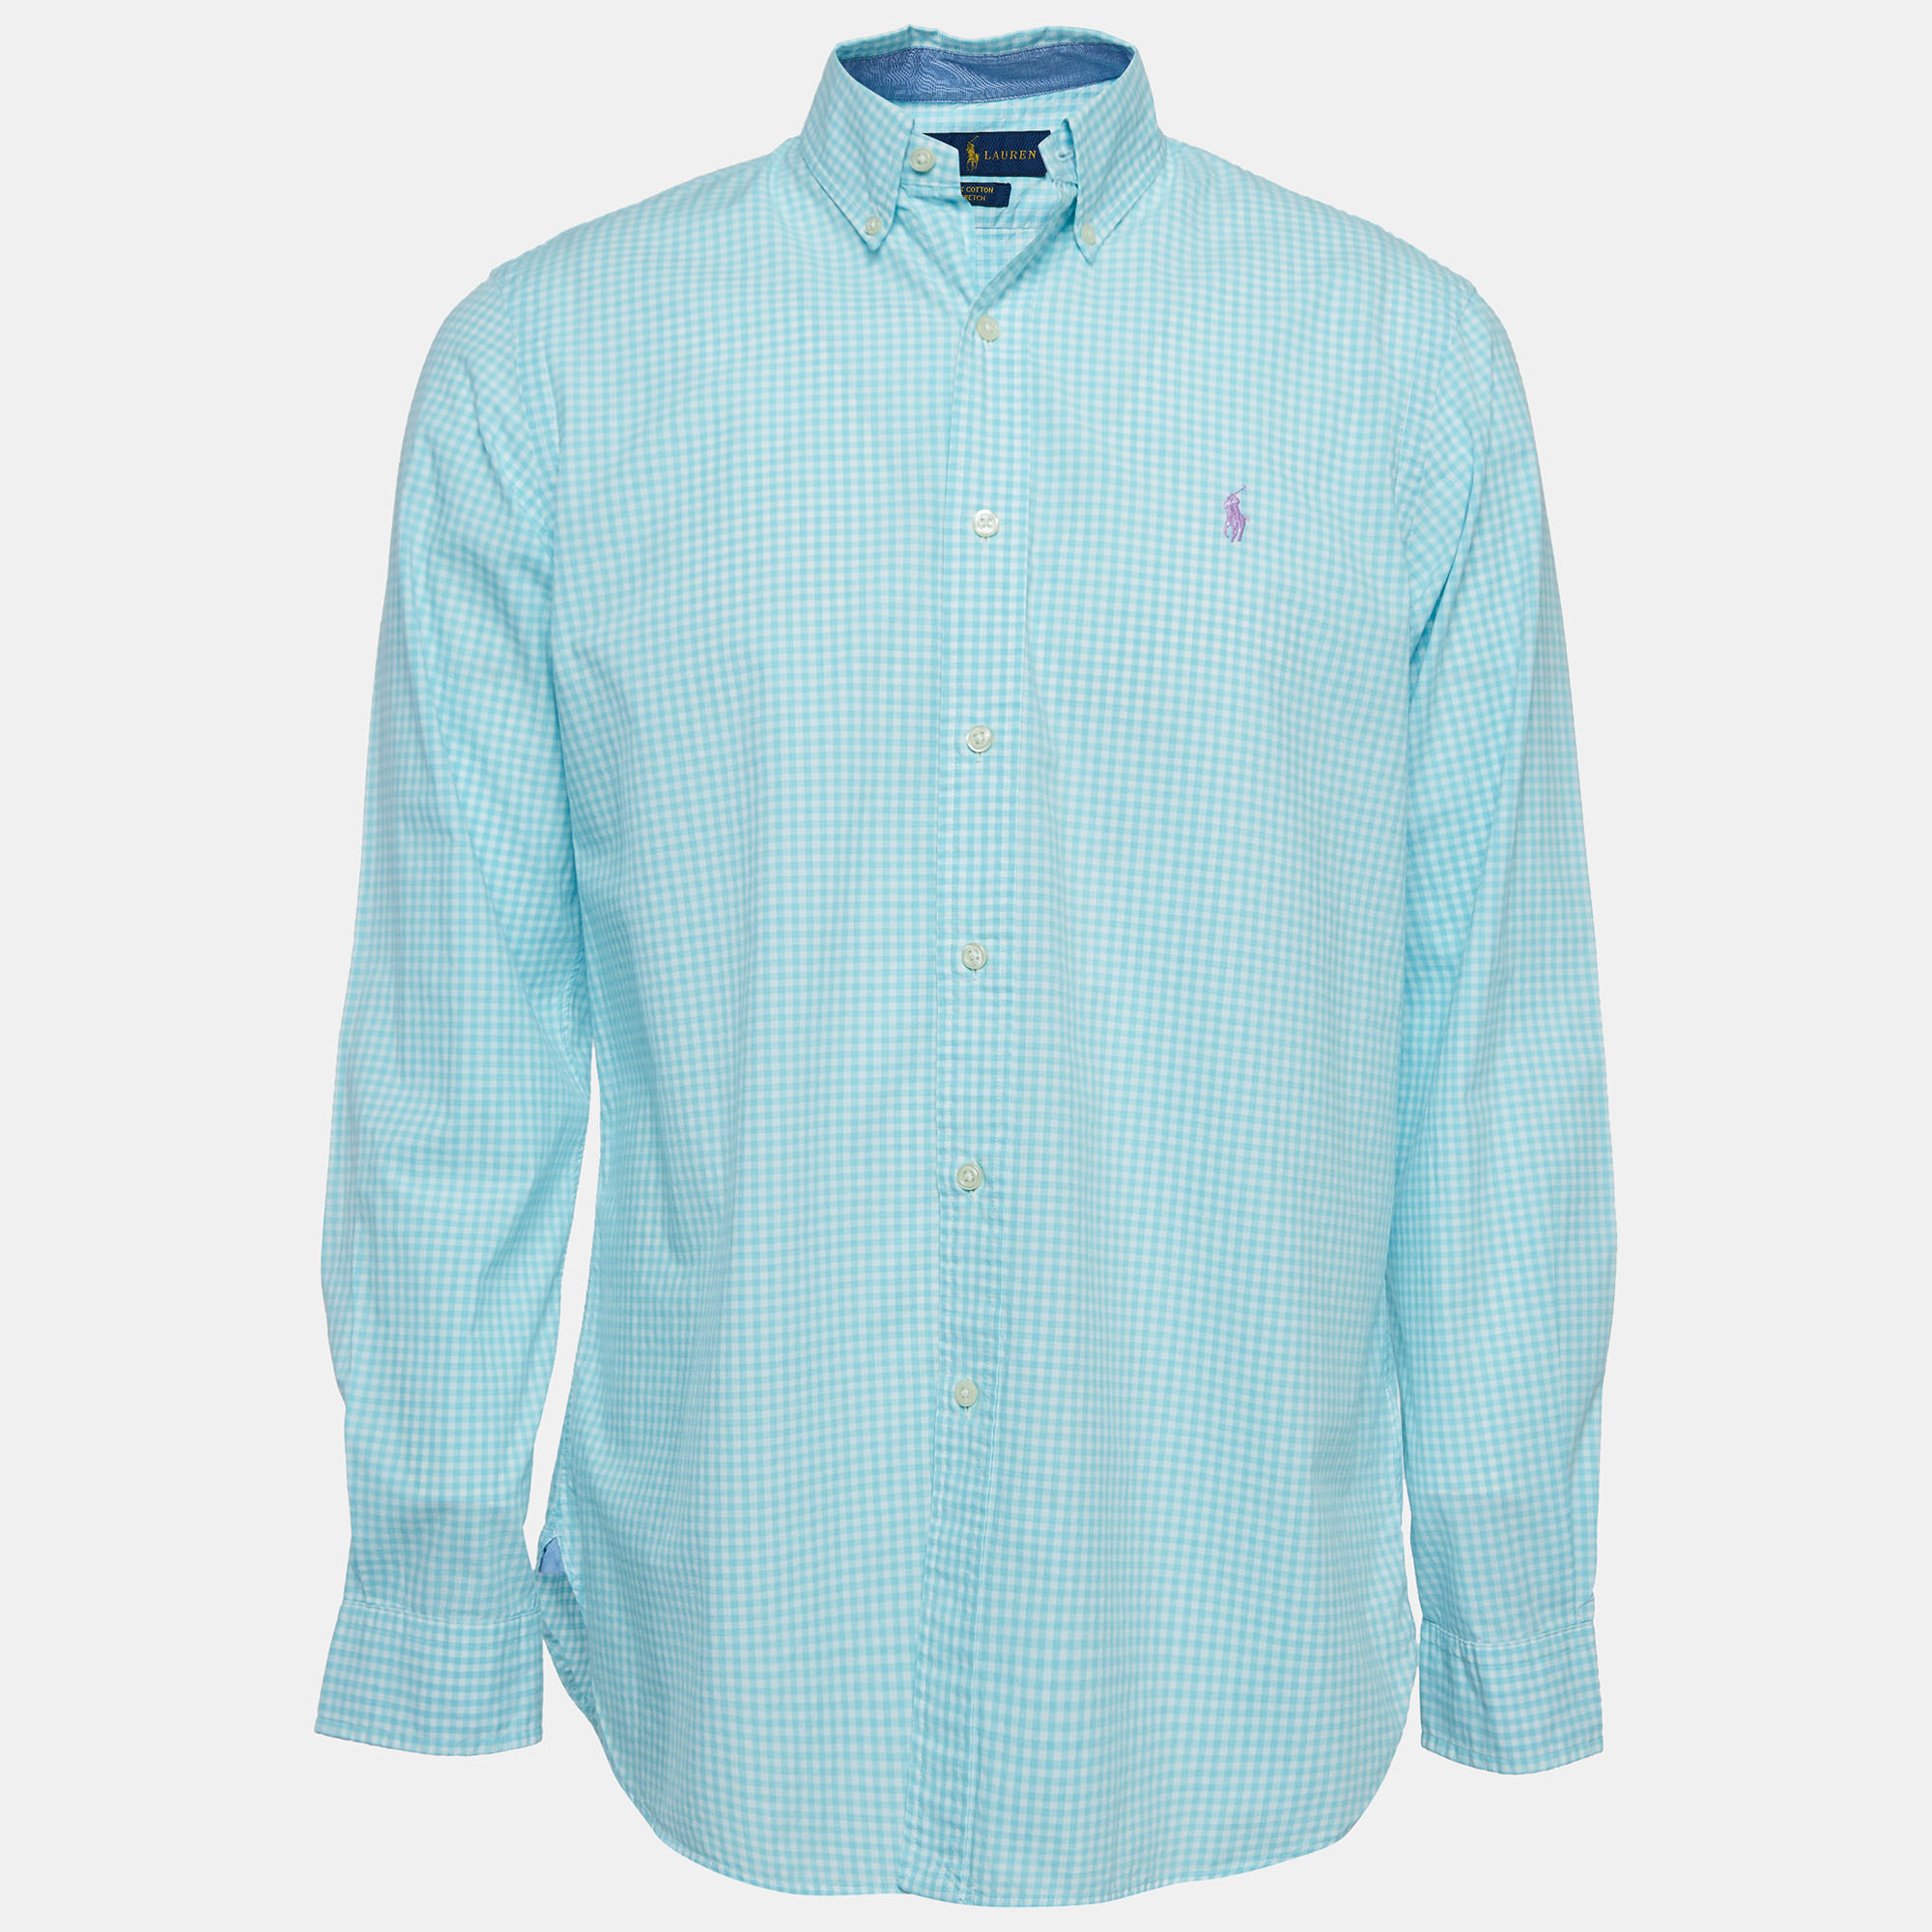 Ralph lauren blue checkered cotton button front shirt m